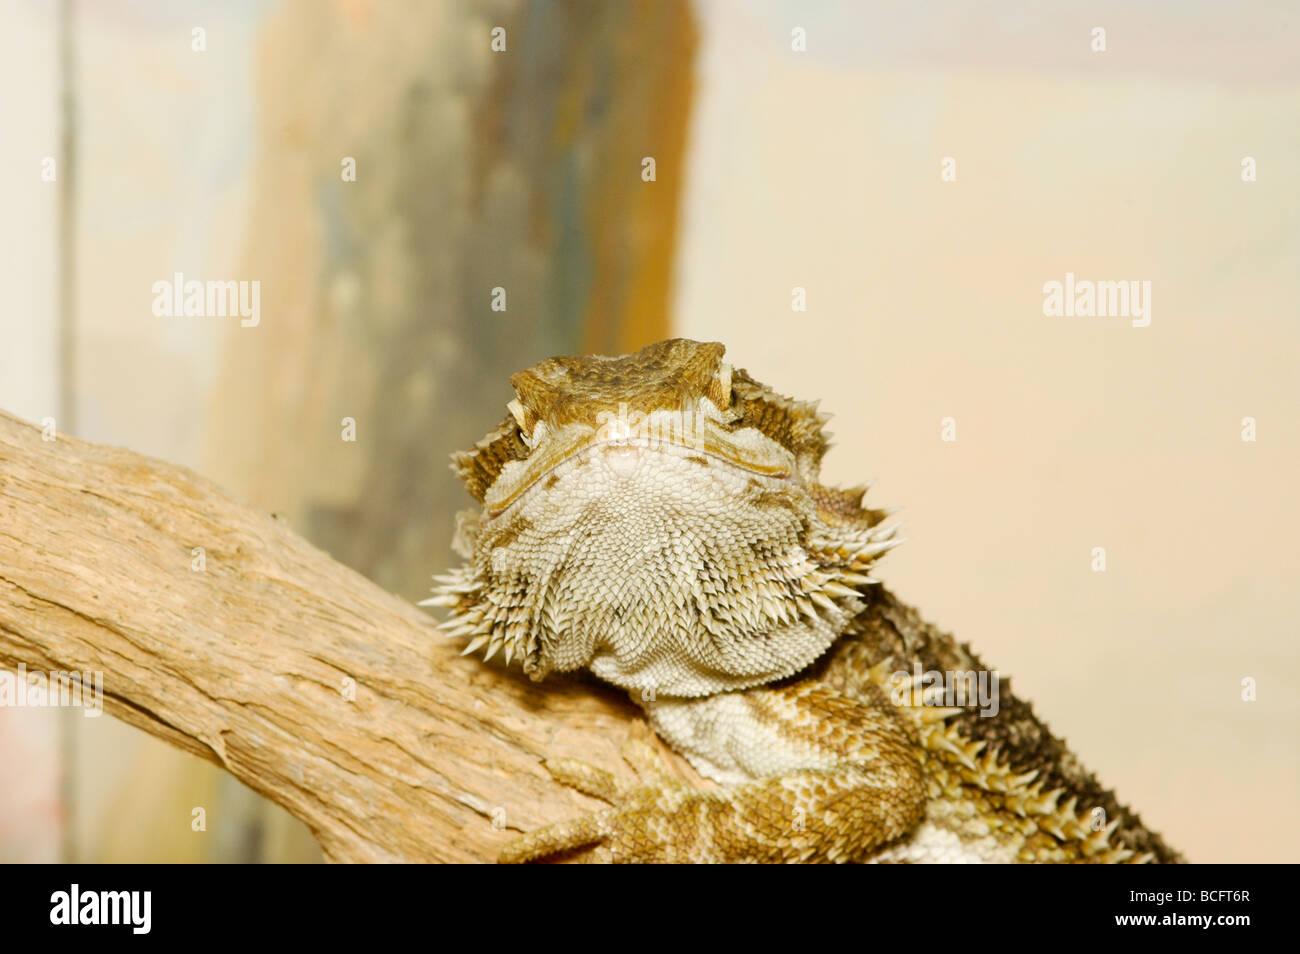 close up of an Egyptian Mastigure Uromastyx aegyptia lizard Stock Photo